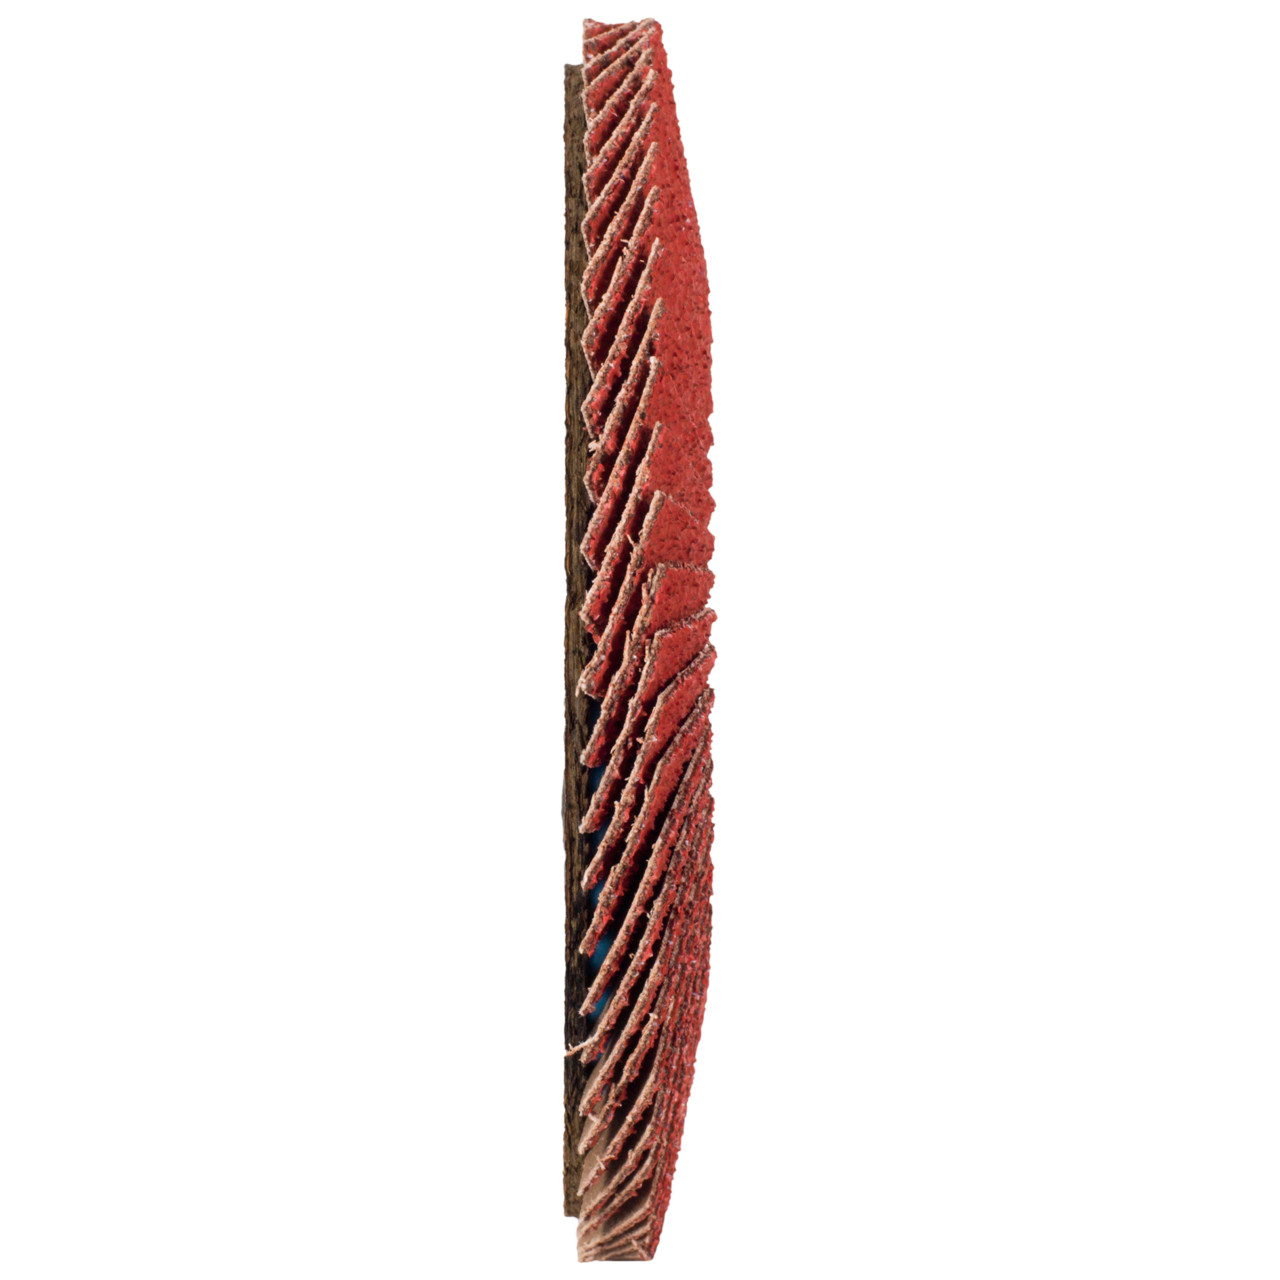 TYROLIT getande borgring DxH 115x22,23 CERABOND getande borgring voor roestvrij staal, P60, vorm: 27A - slingeruitvoering (glasvezeldragerhuisuitvoering), Art. 34043515